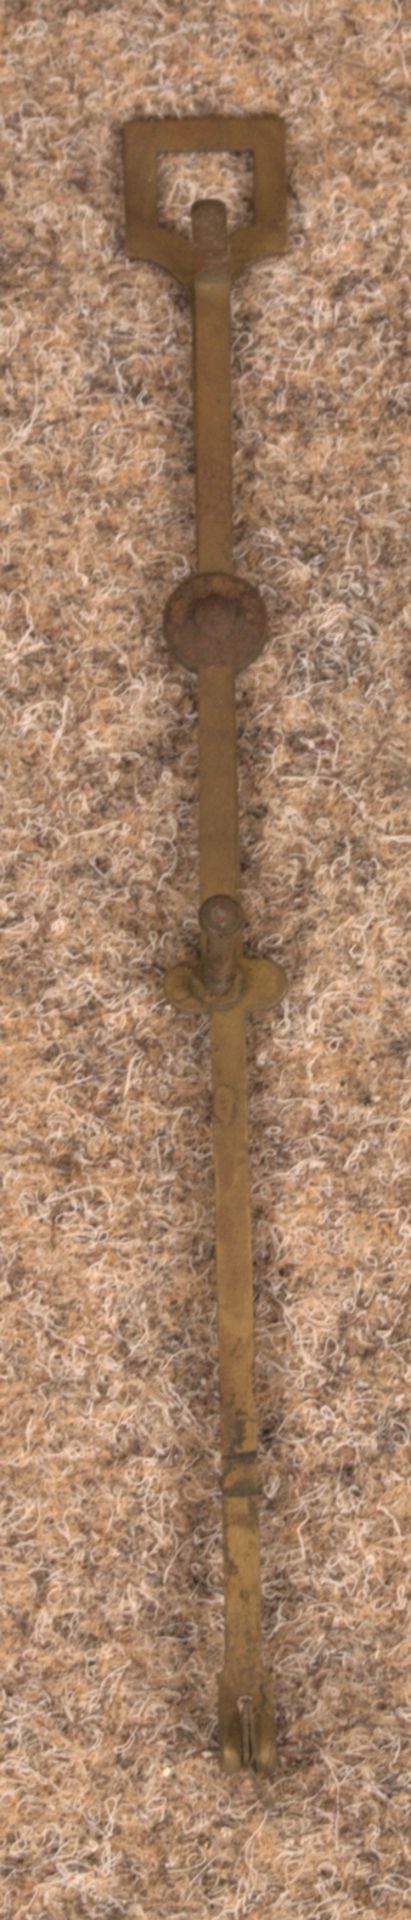 Bodenstanduhr. Helles Eichengehäuse mit Rundbogenabschluß, zweigewichtiges Uhrwerk mit Schlag auf - Bild 3 aus 9